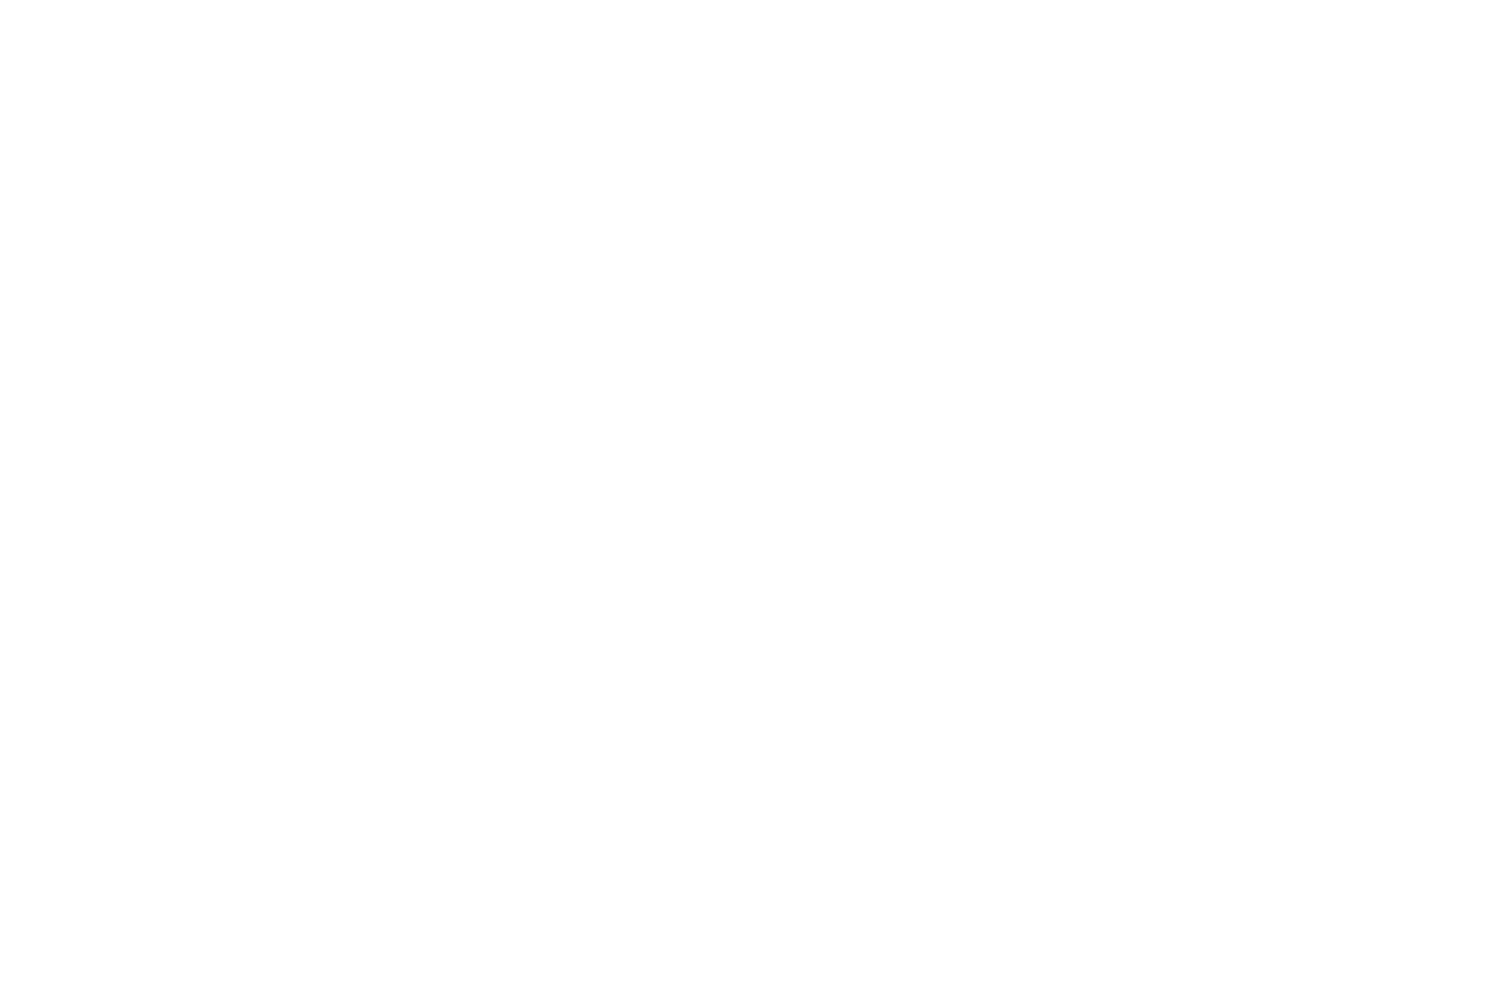 STANDART BUNGALOV | Sapanca Bamboolow Resort - Sapanca Gölü Kenarında Konaklama